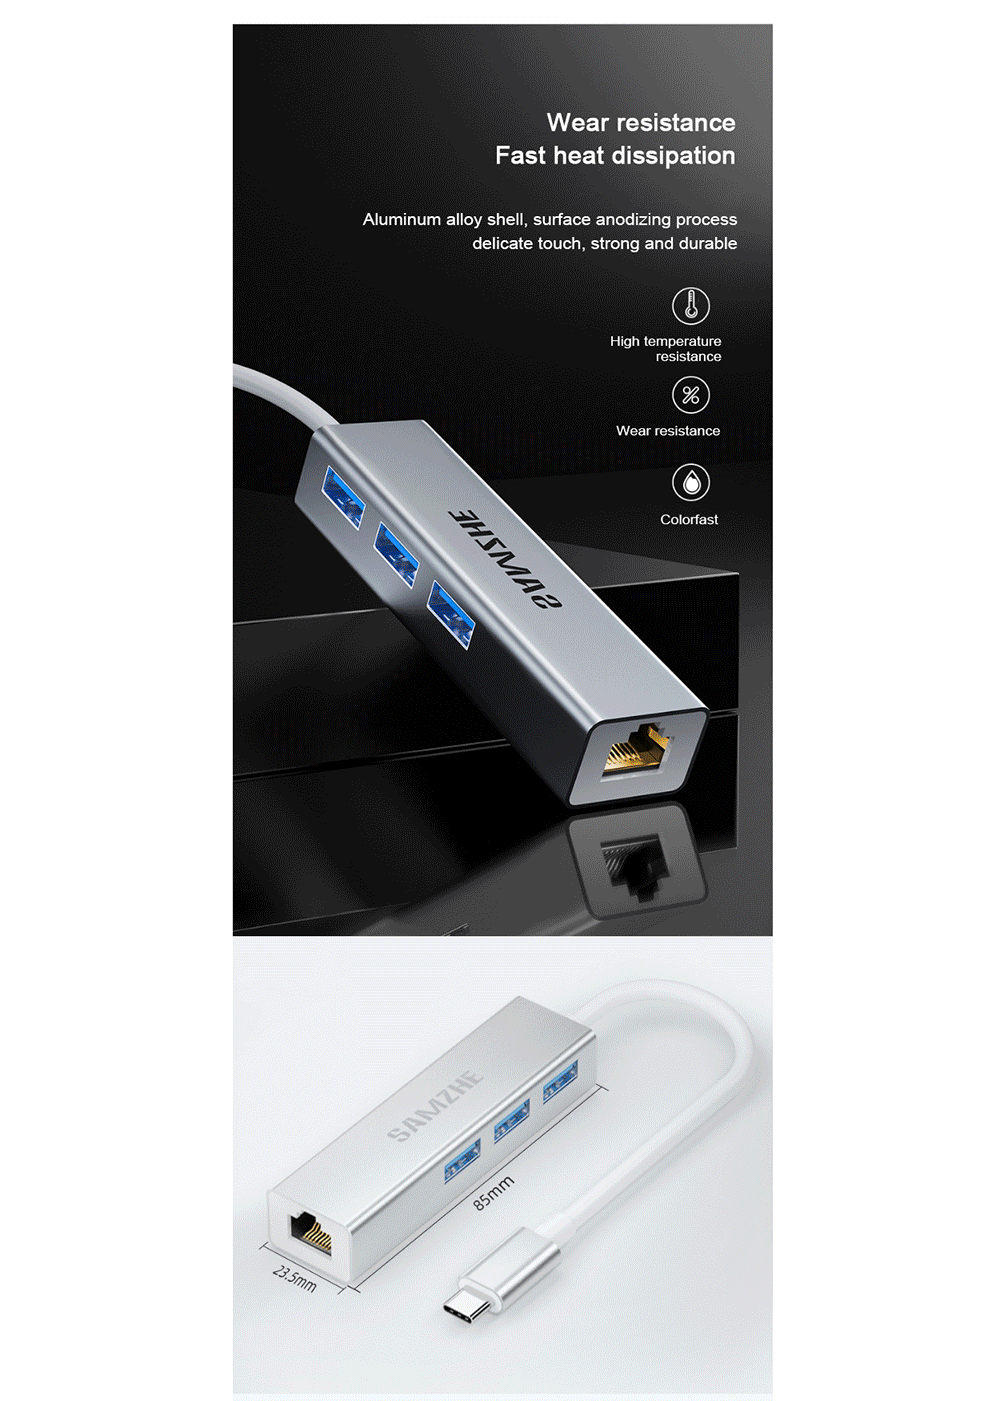 SAMZHE-Type-C-Splitter-3-Port-USB30-Hub-RJ45-Gigabit-Ethernet-Adapter-Converter-Docking-Station-for--1751221